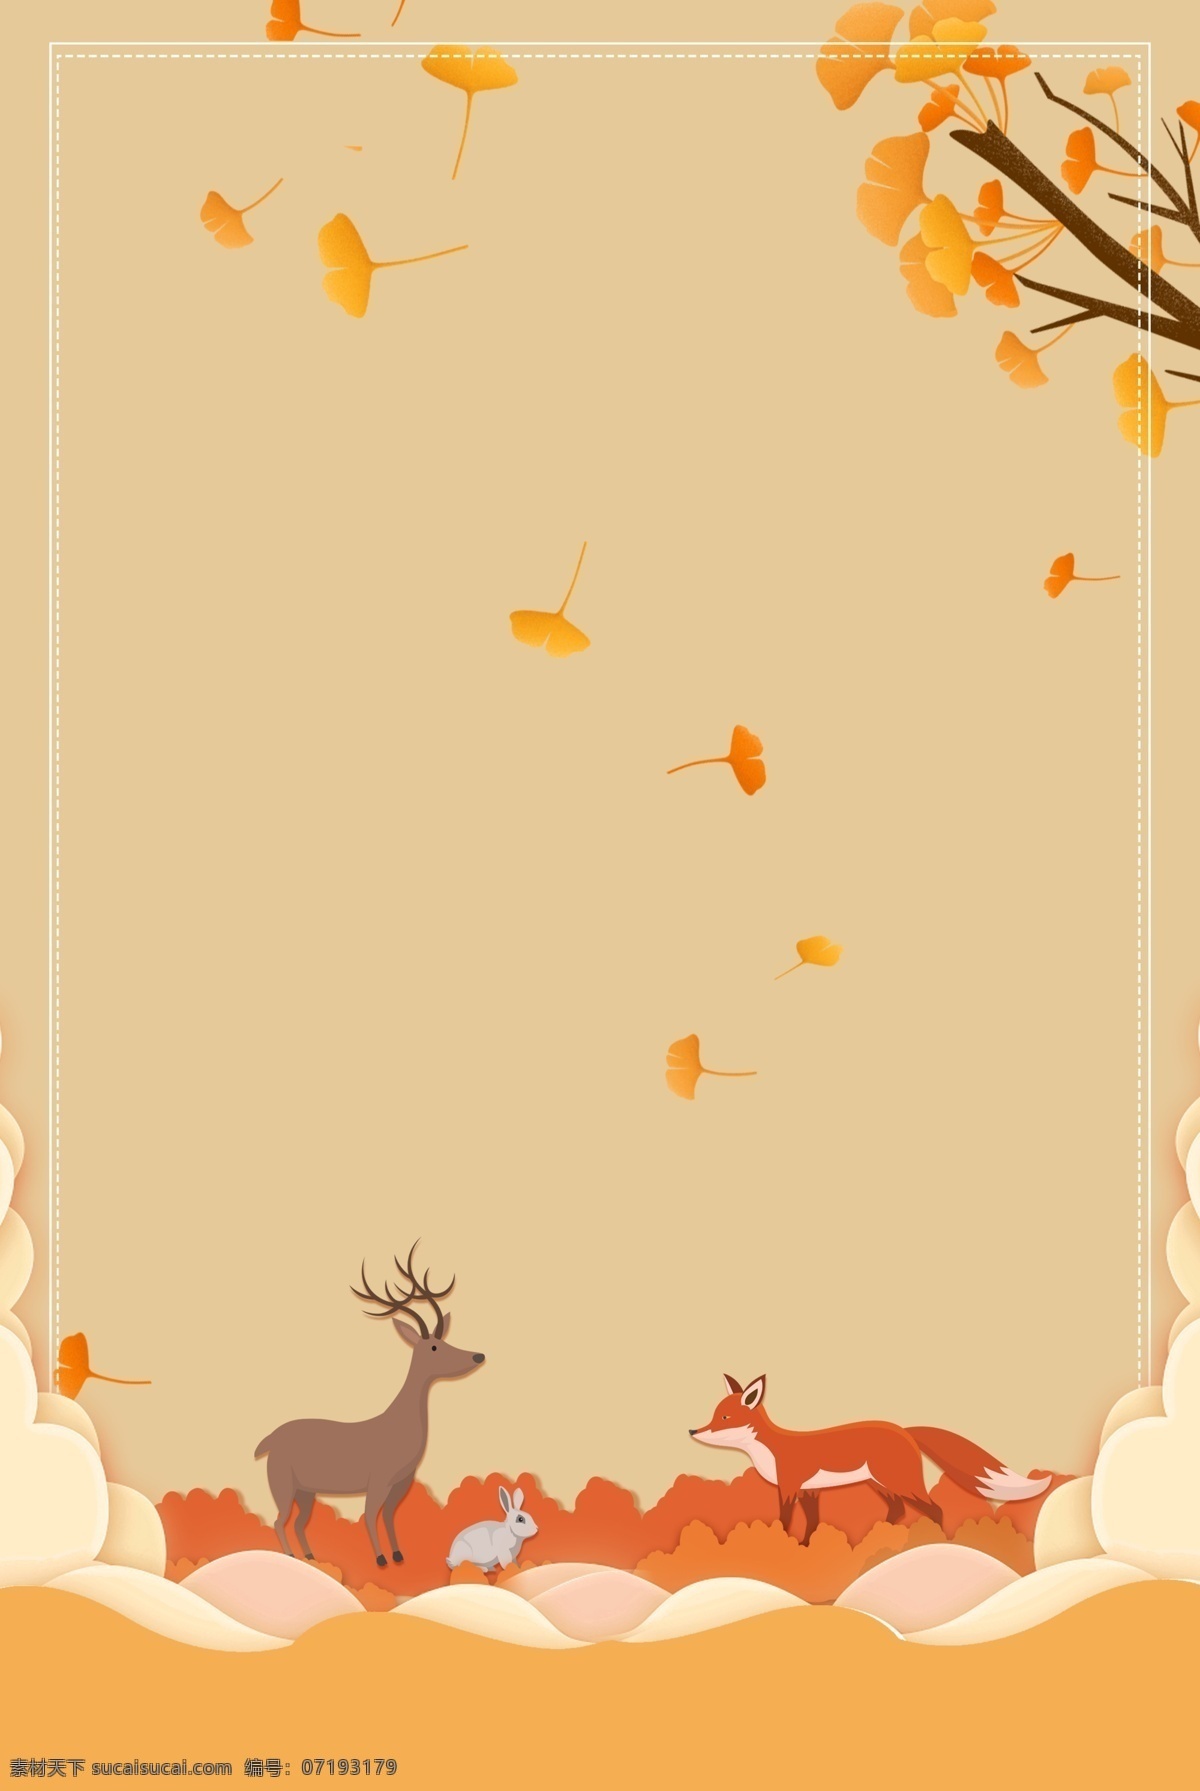 黄色 手绘 秋季 旅行 银杏叶 动物 背景 秋季旅行 黄色背景 金秋 秋天 麋鹿 狐狸